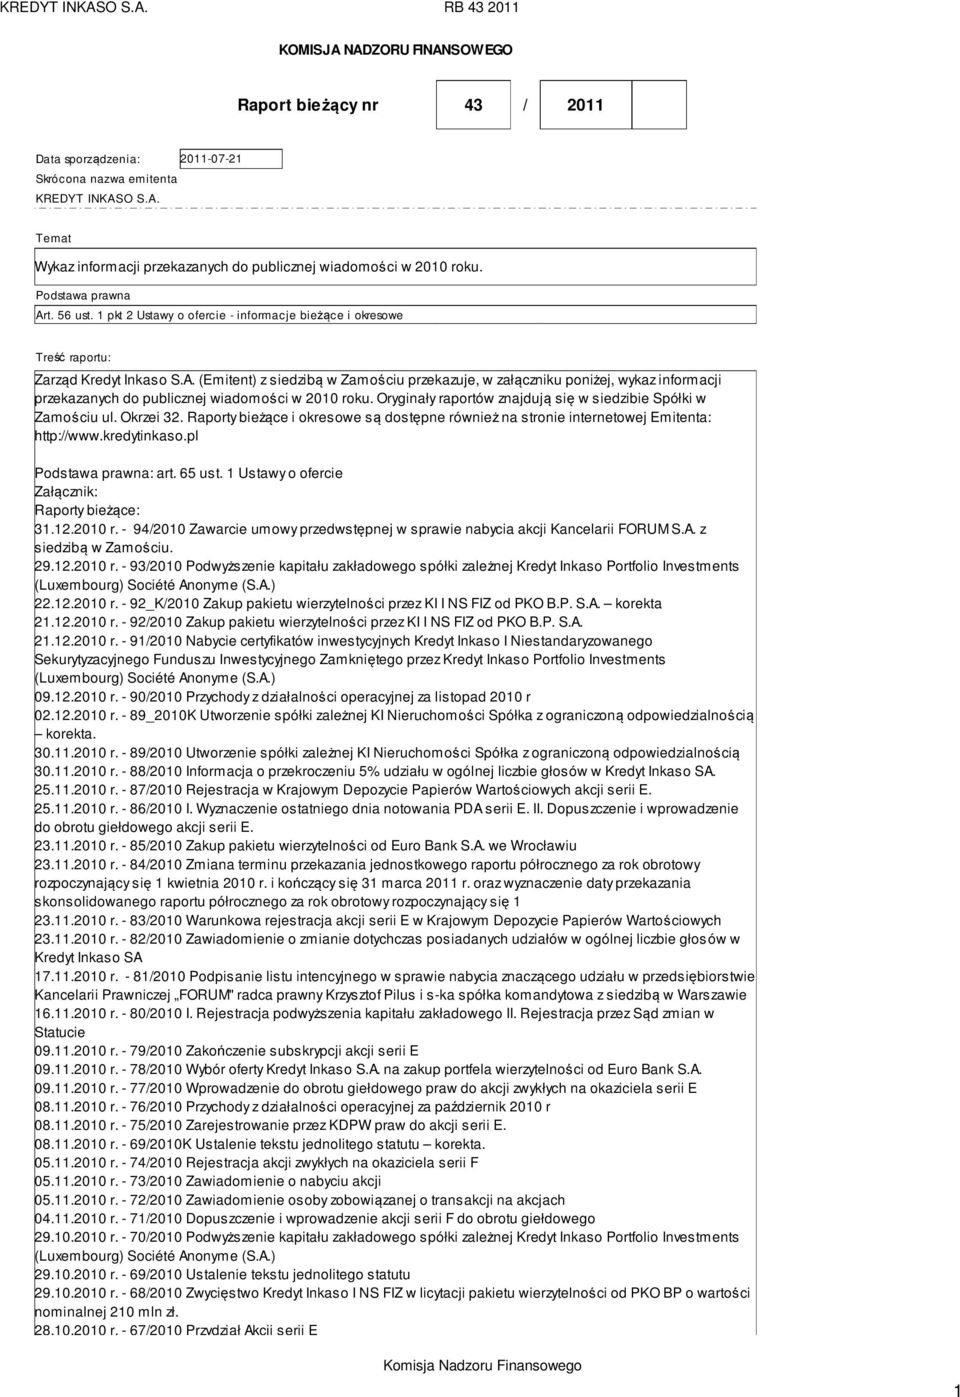 Oryginały raportów znajdują się w siedzibie Spółki w Zamościu ul. Okrzei 32. Raporty bieżące i okresowe są dostępne również na stronie internetowej Emitenta: http://www.kredytinkaso.